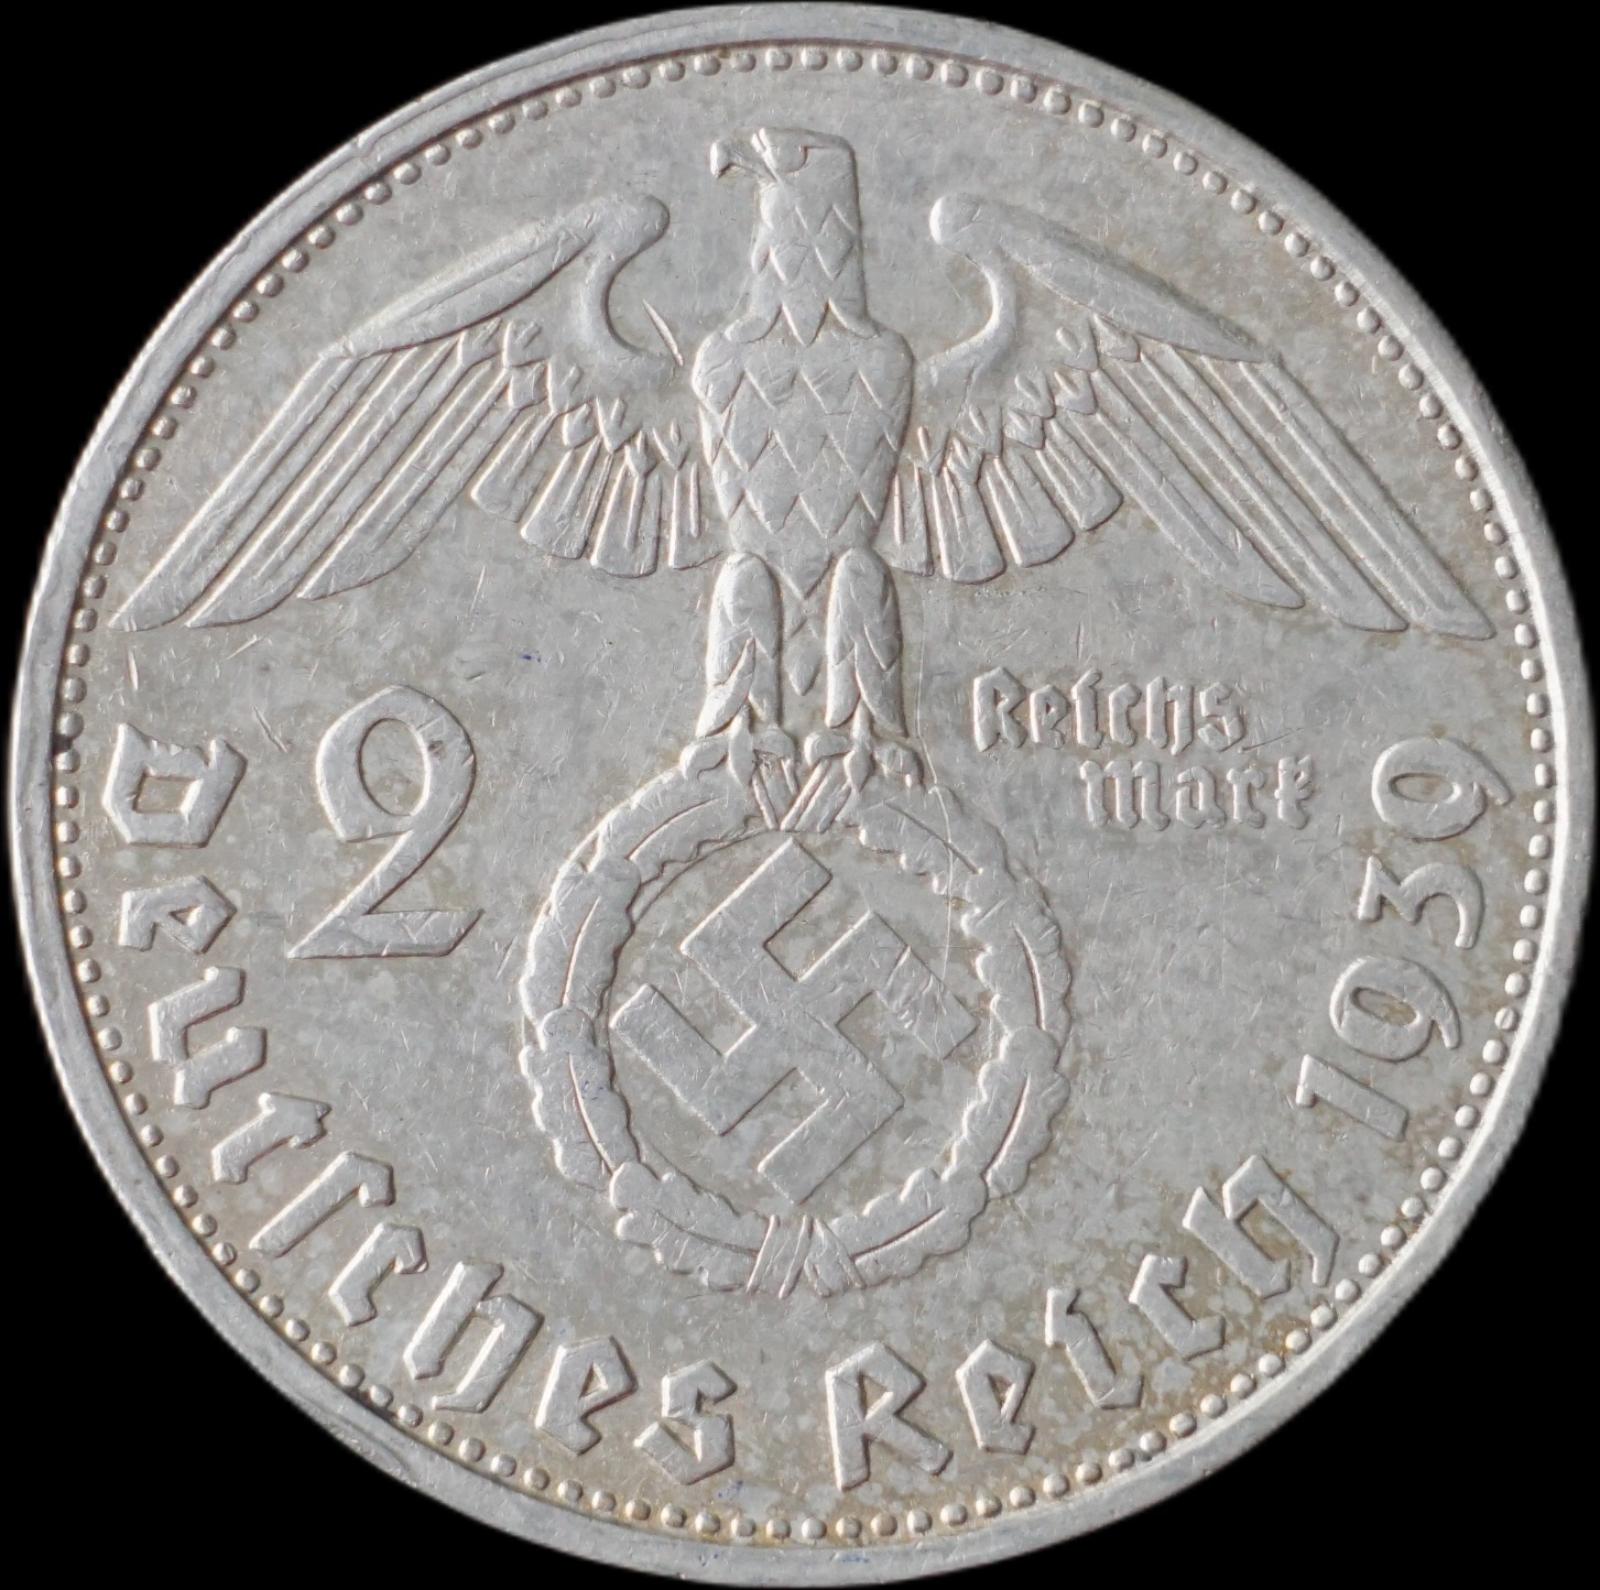 Nemecko - 2 Marka 1939 G Hindenburg - strieborná minca - Numizmatika